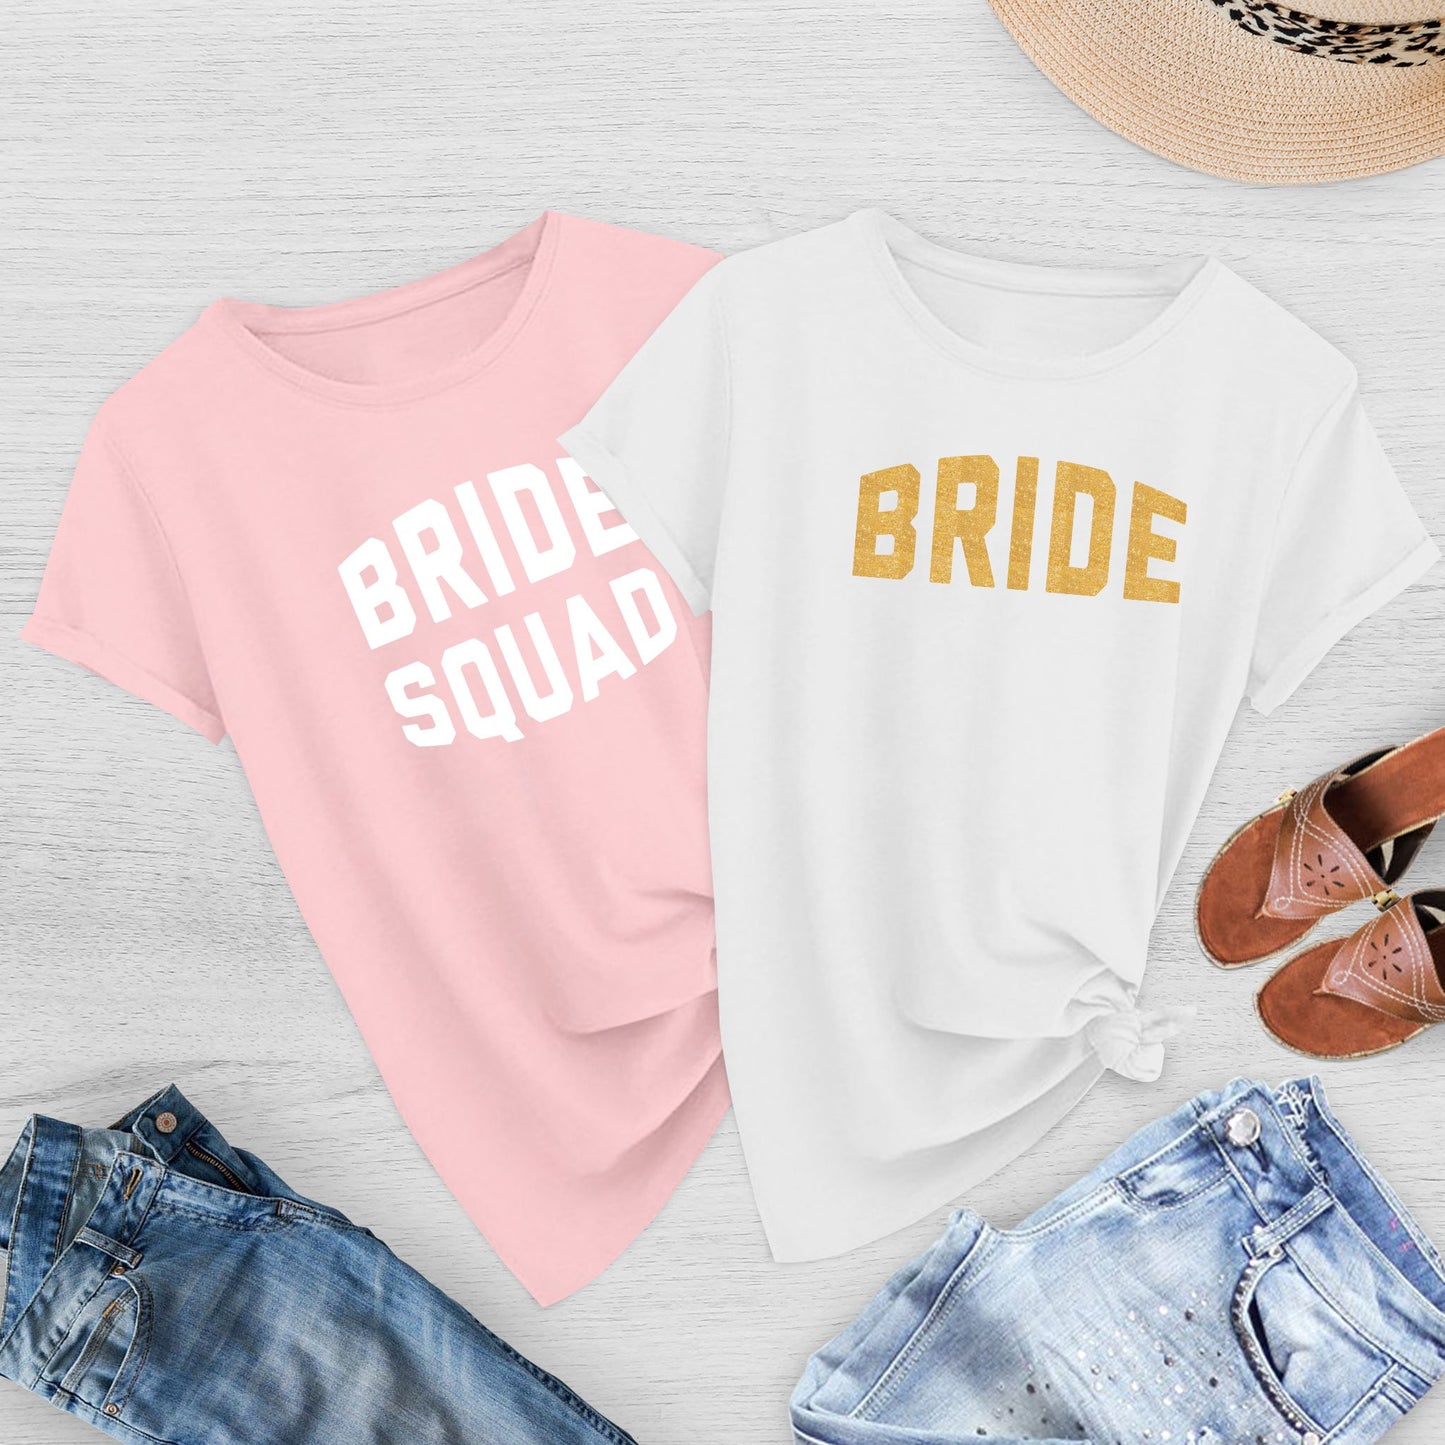 Bride Squad & Bride